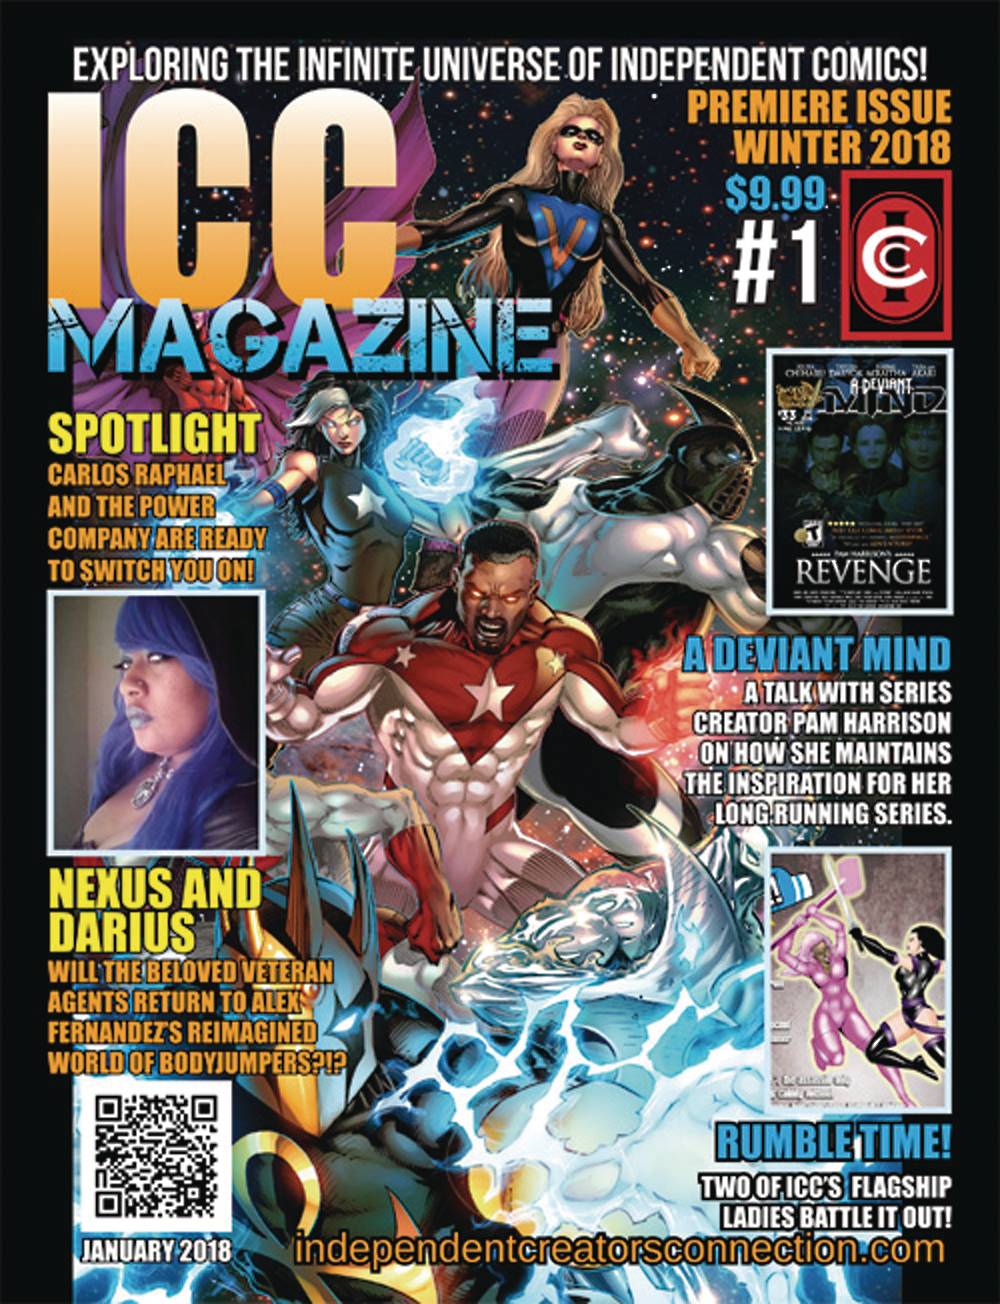 Icc Magazine #1